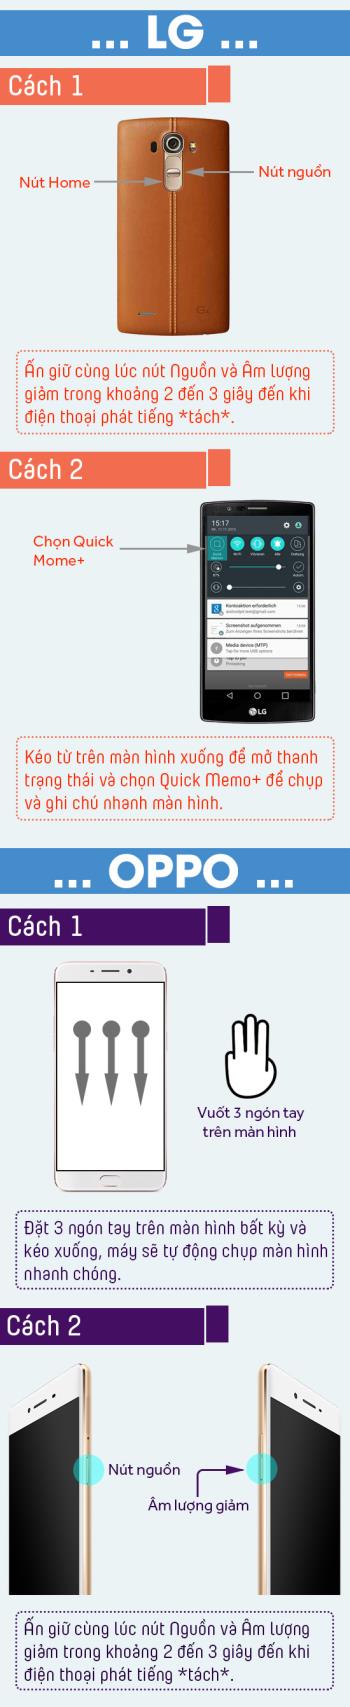 Instrucțiuni despre cum să faceți capturi de ecran pe telefoanele LG și OPPO